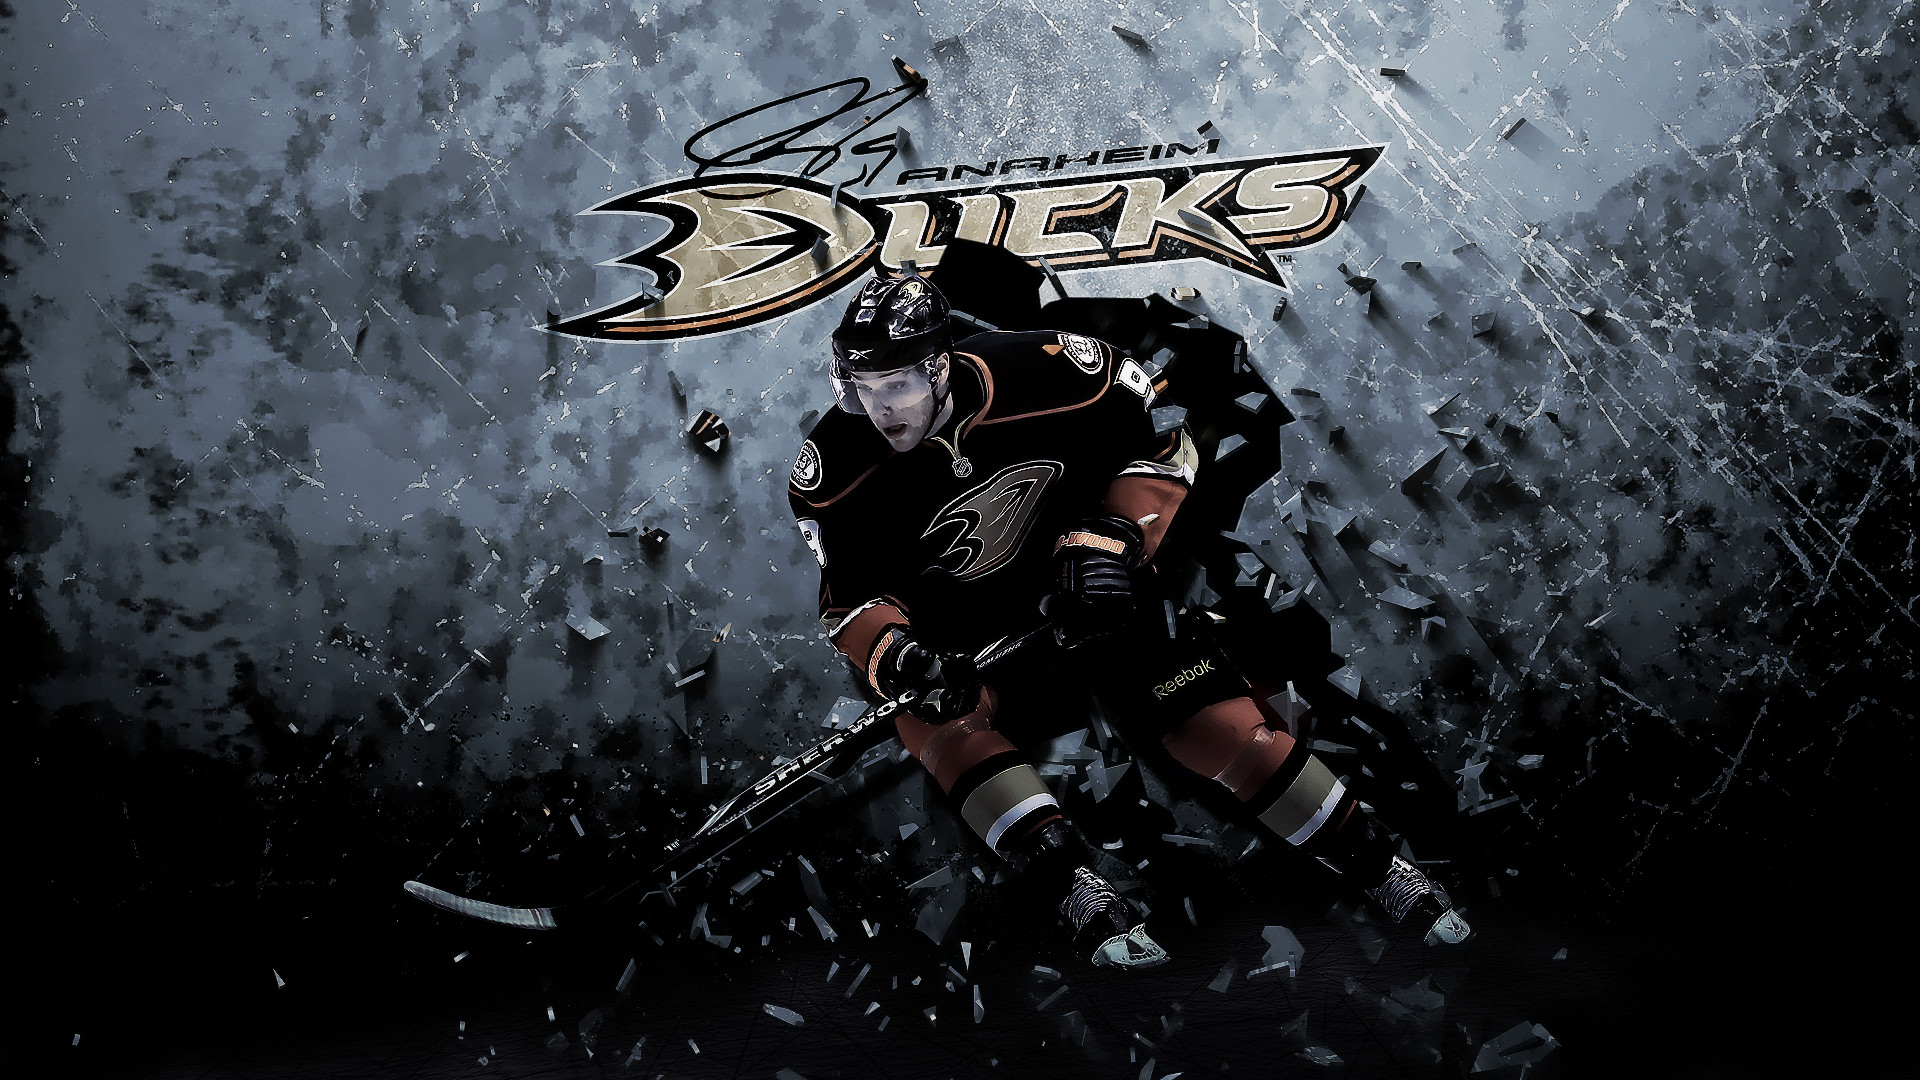 1920x1080 Anaheim Ducks Background Free Download.